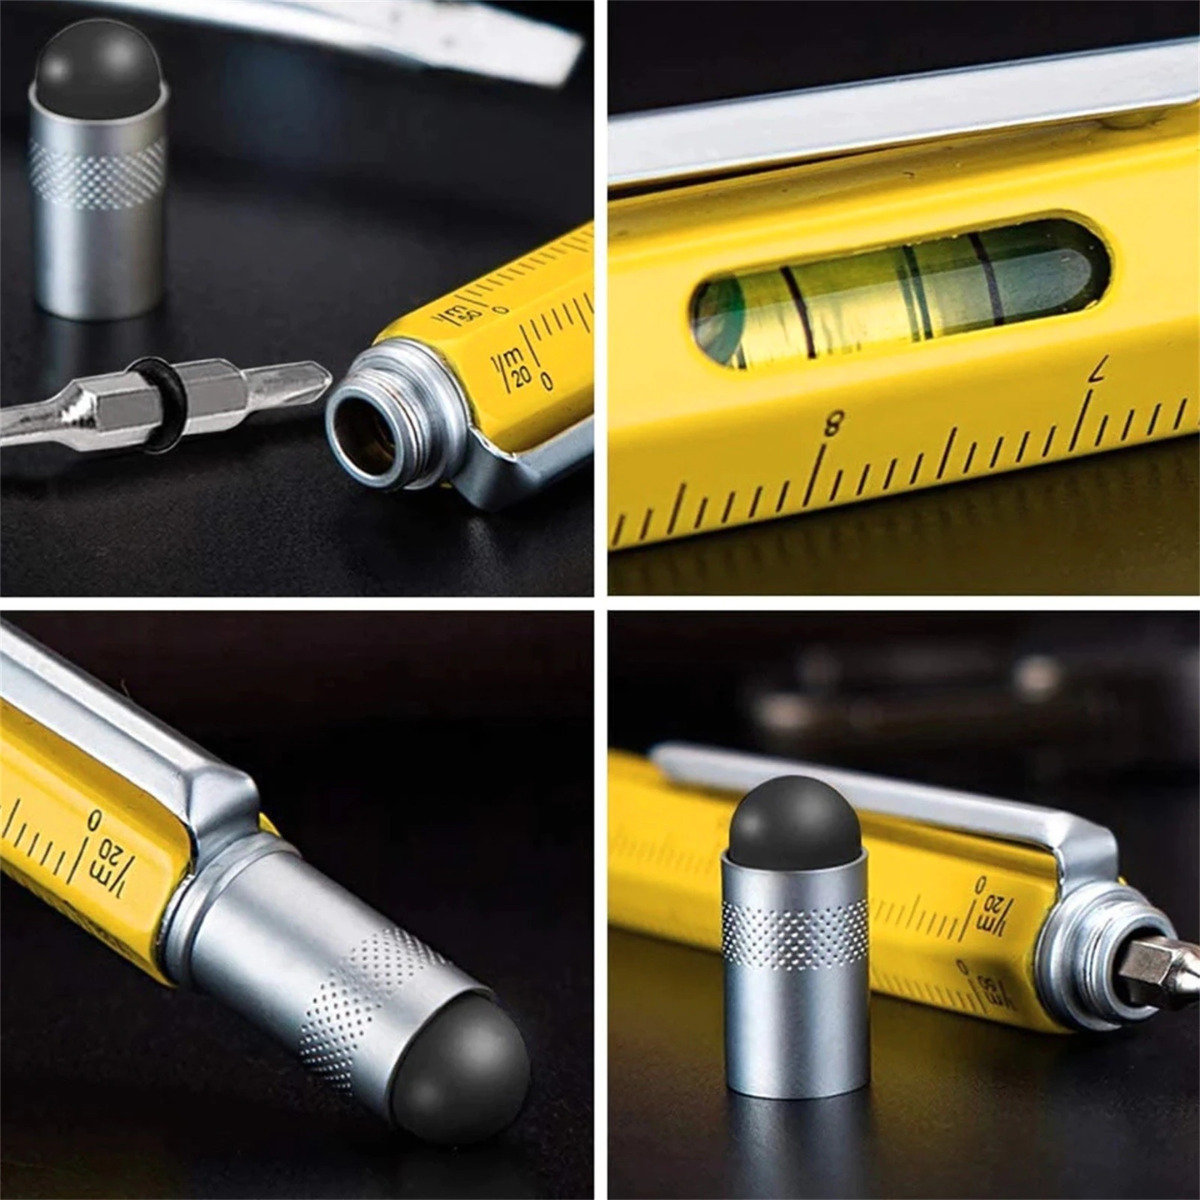 Bolígrafo de herramientas multifunción, herramienta 6 en 1 con bolígrafo,  lápiz capacitivo para pantalla táctil, regla, nivel de burbuja